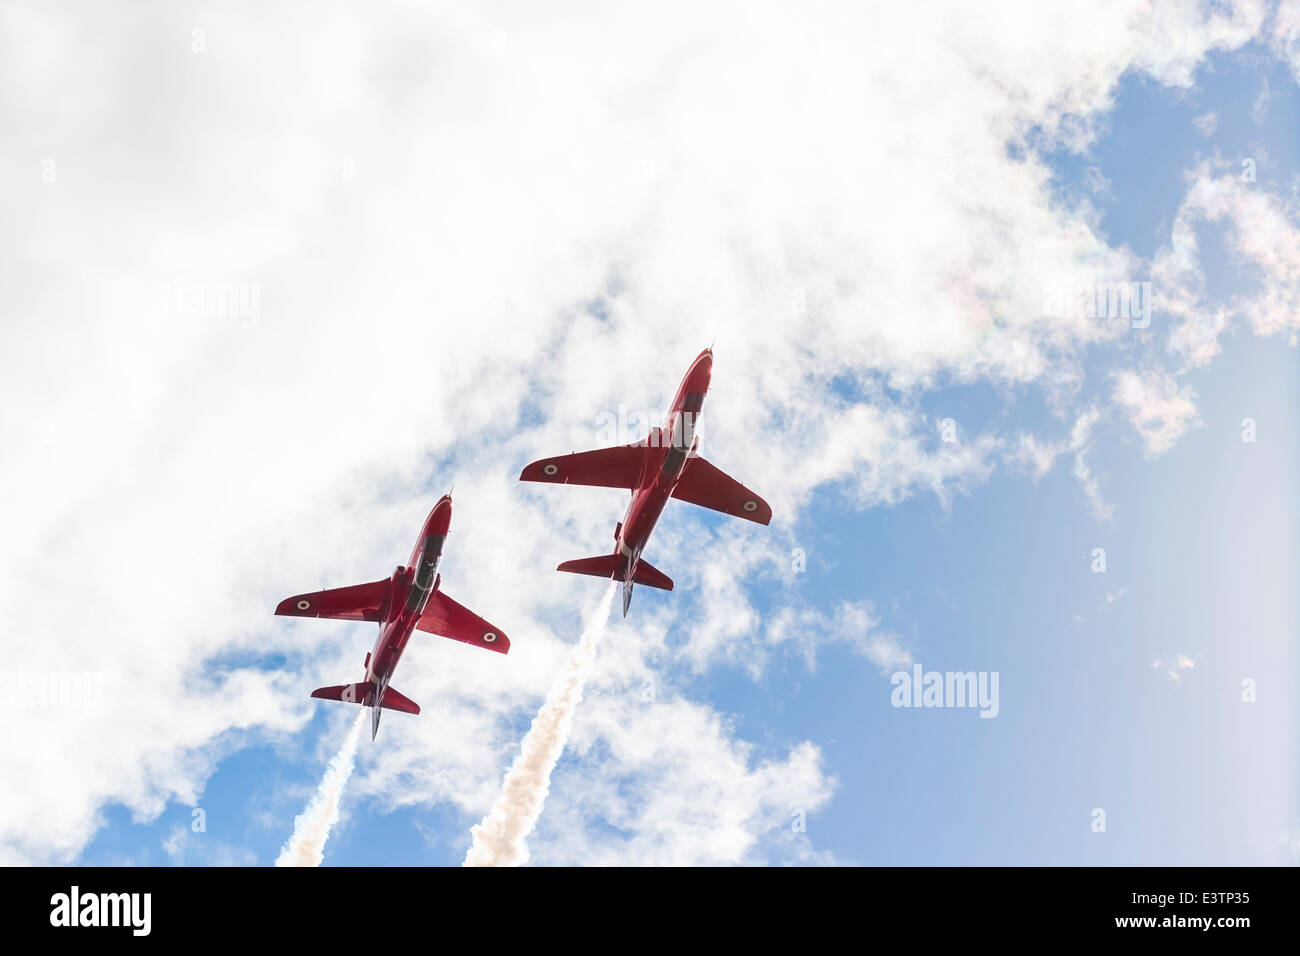 Tallinn, Estonie - 23 juin 2014 : Flèche Rouge vol acrobatique show avec red fighter jets dans Tallinn, Estonie le 23 juin 2014 Banque D'Images